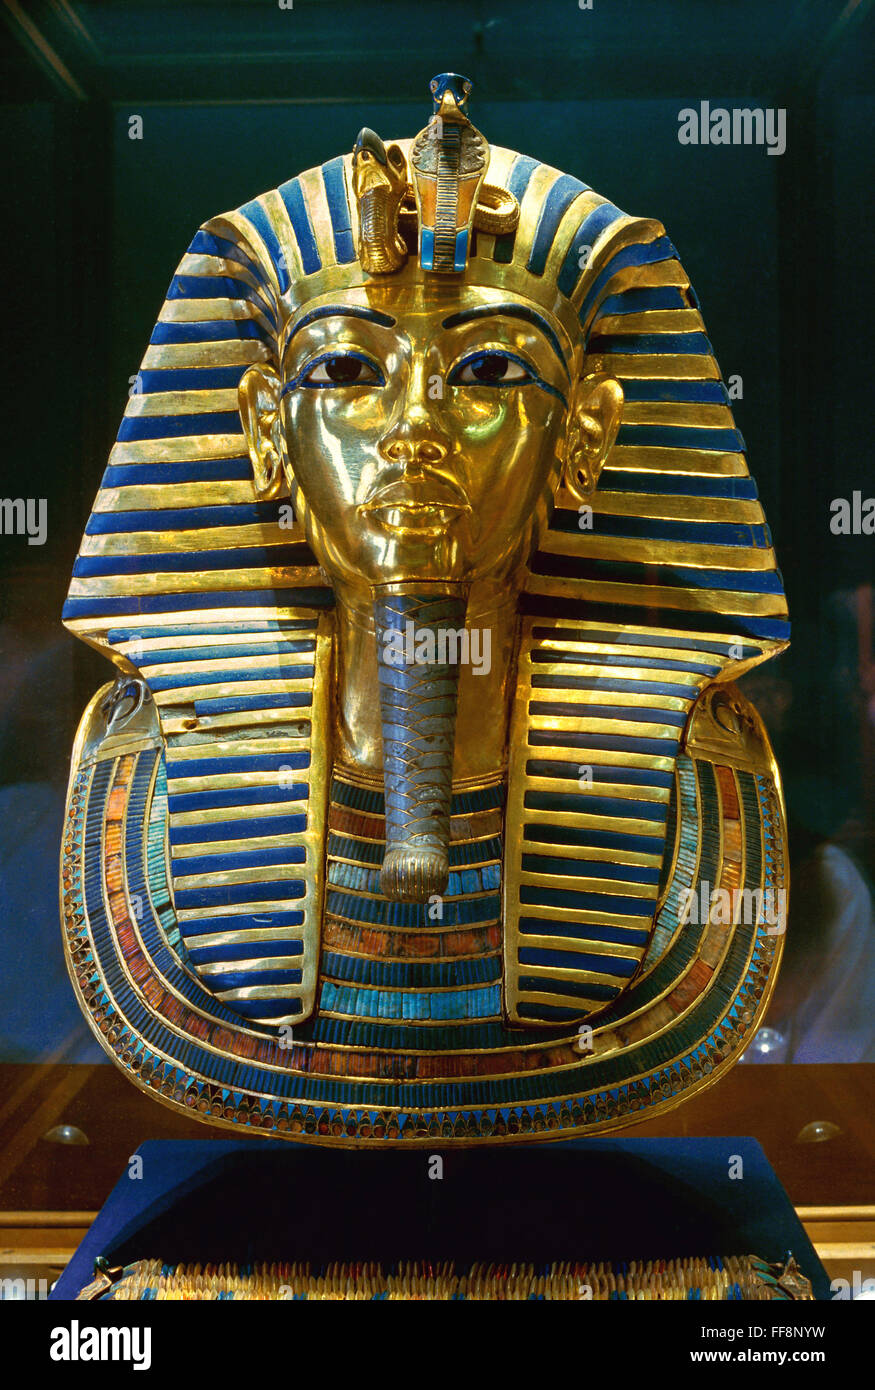 Die Grabbeigaben Maske des Tutanchamun, 14. Jahrhundert v. Chr., Ägyptisches Museum der Altertümer, Kairo, Ägypten, Afrika Stockfoto